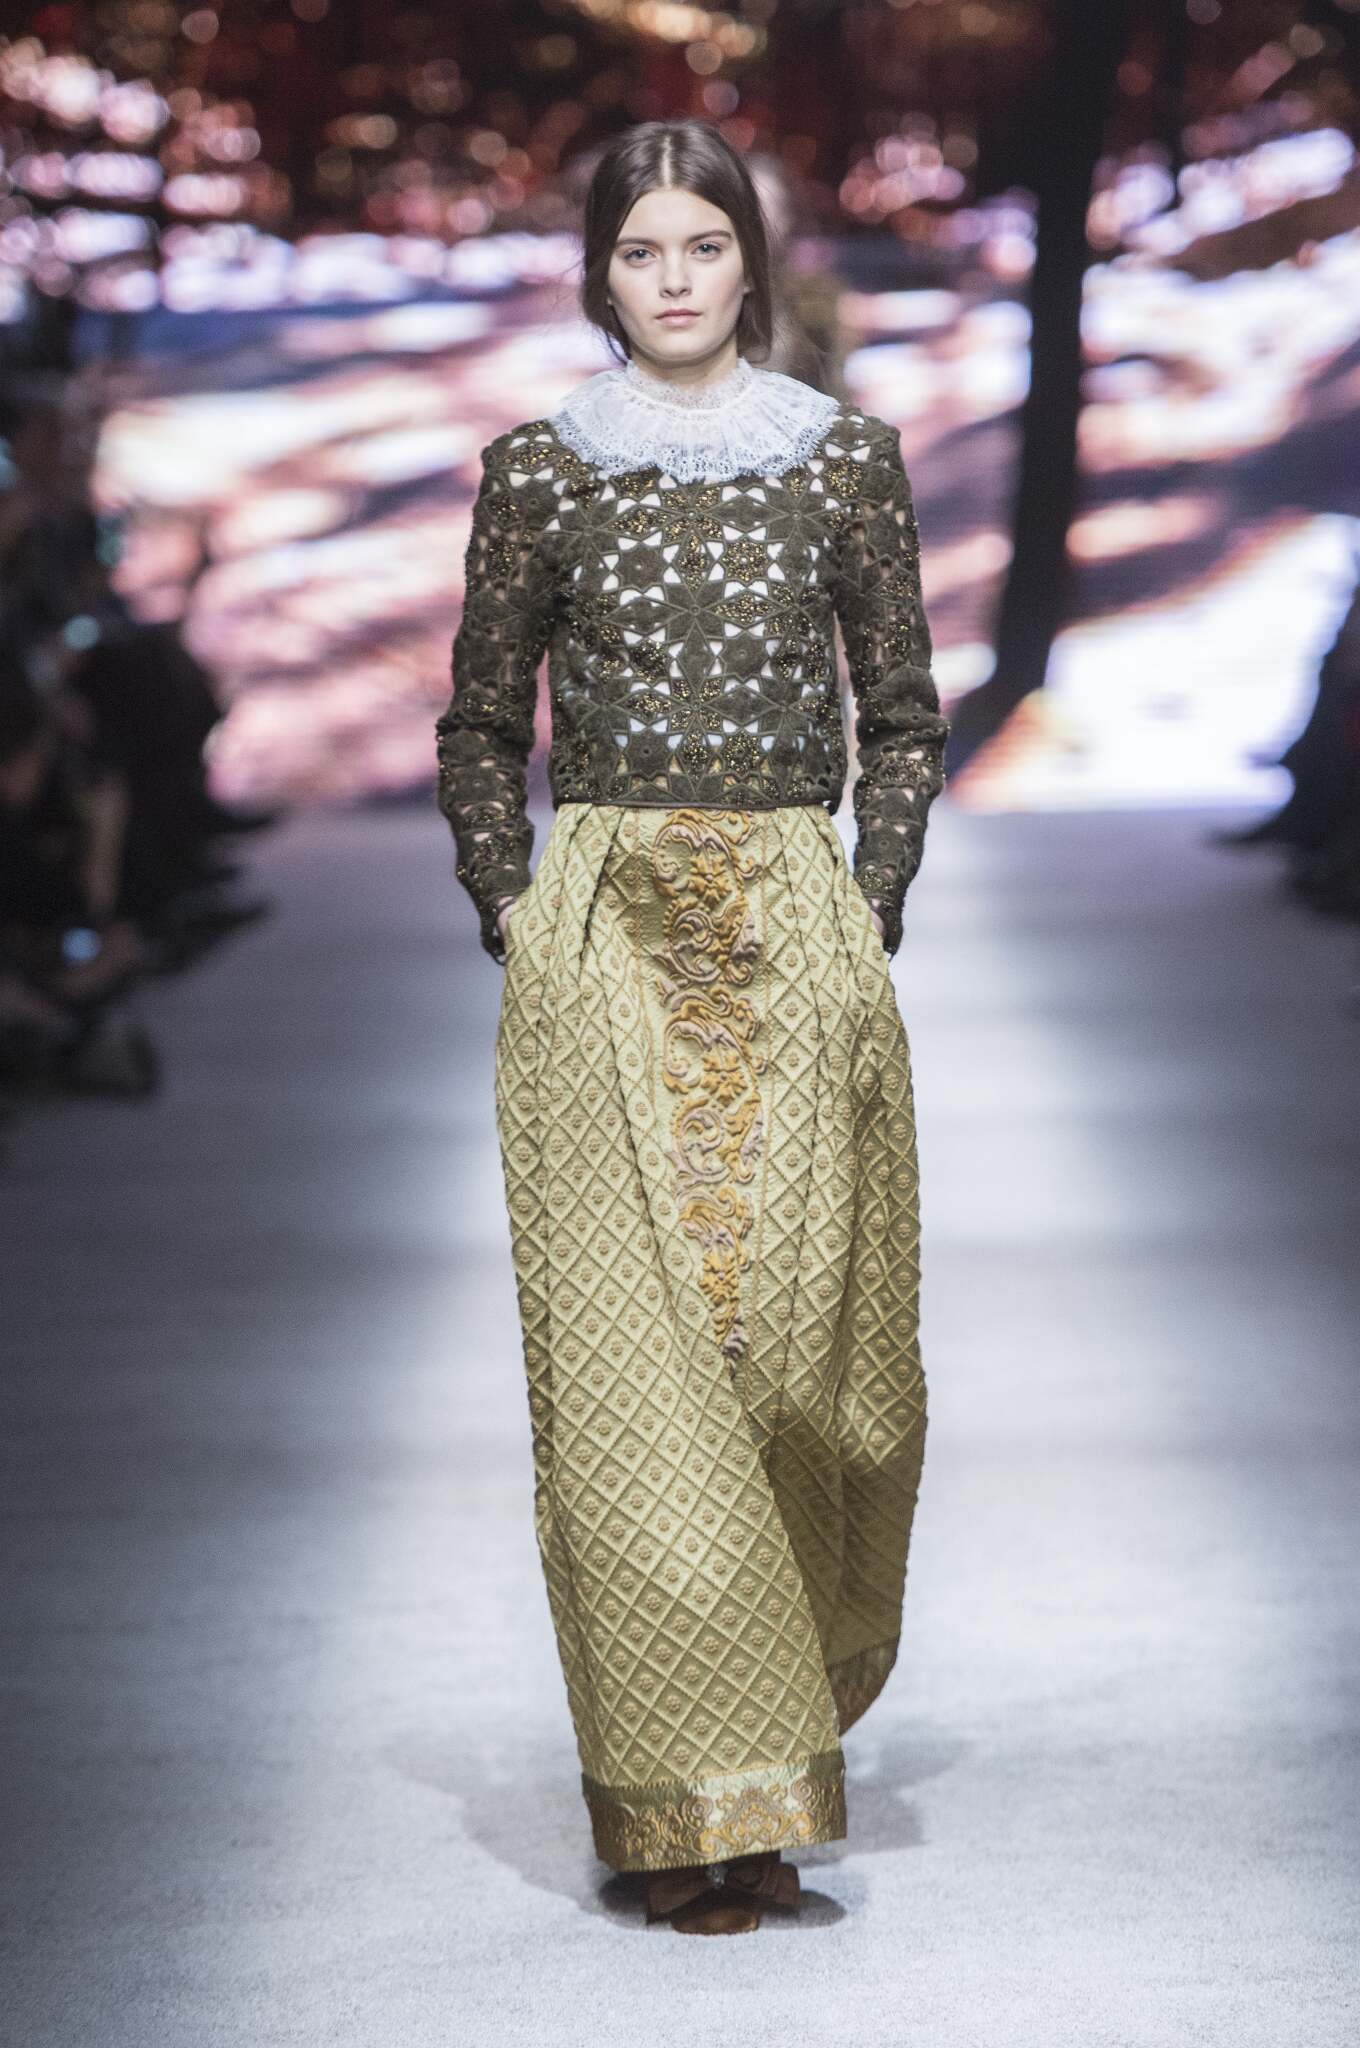 2015 Fashion Woman Model Alberta Ferretti Collection Catwalk